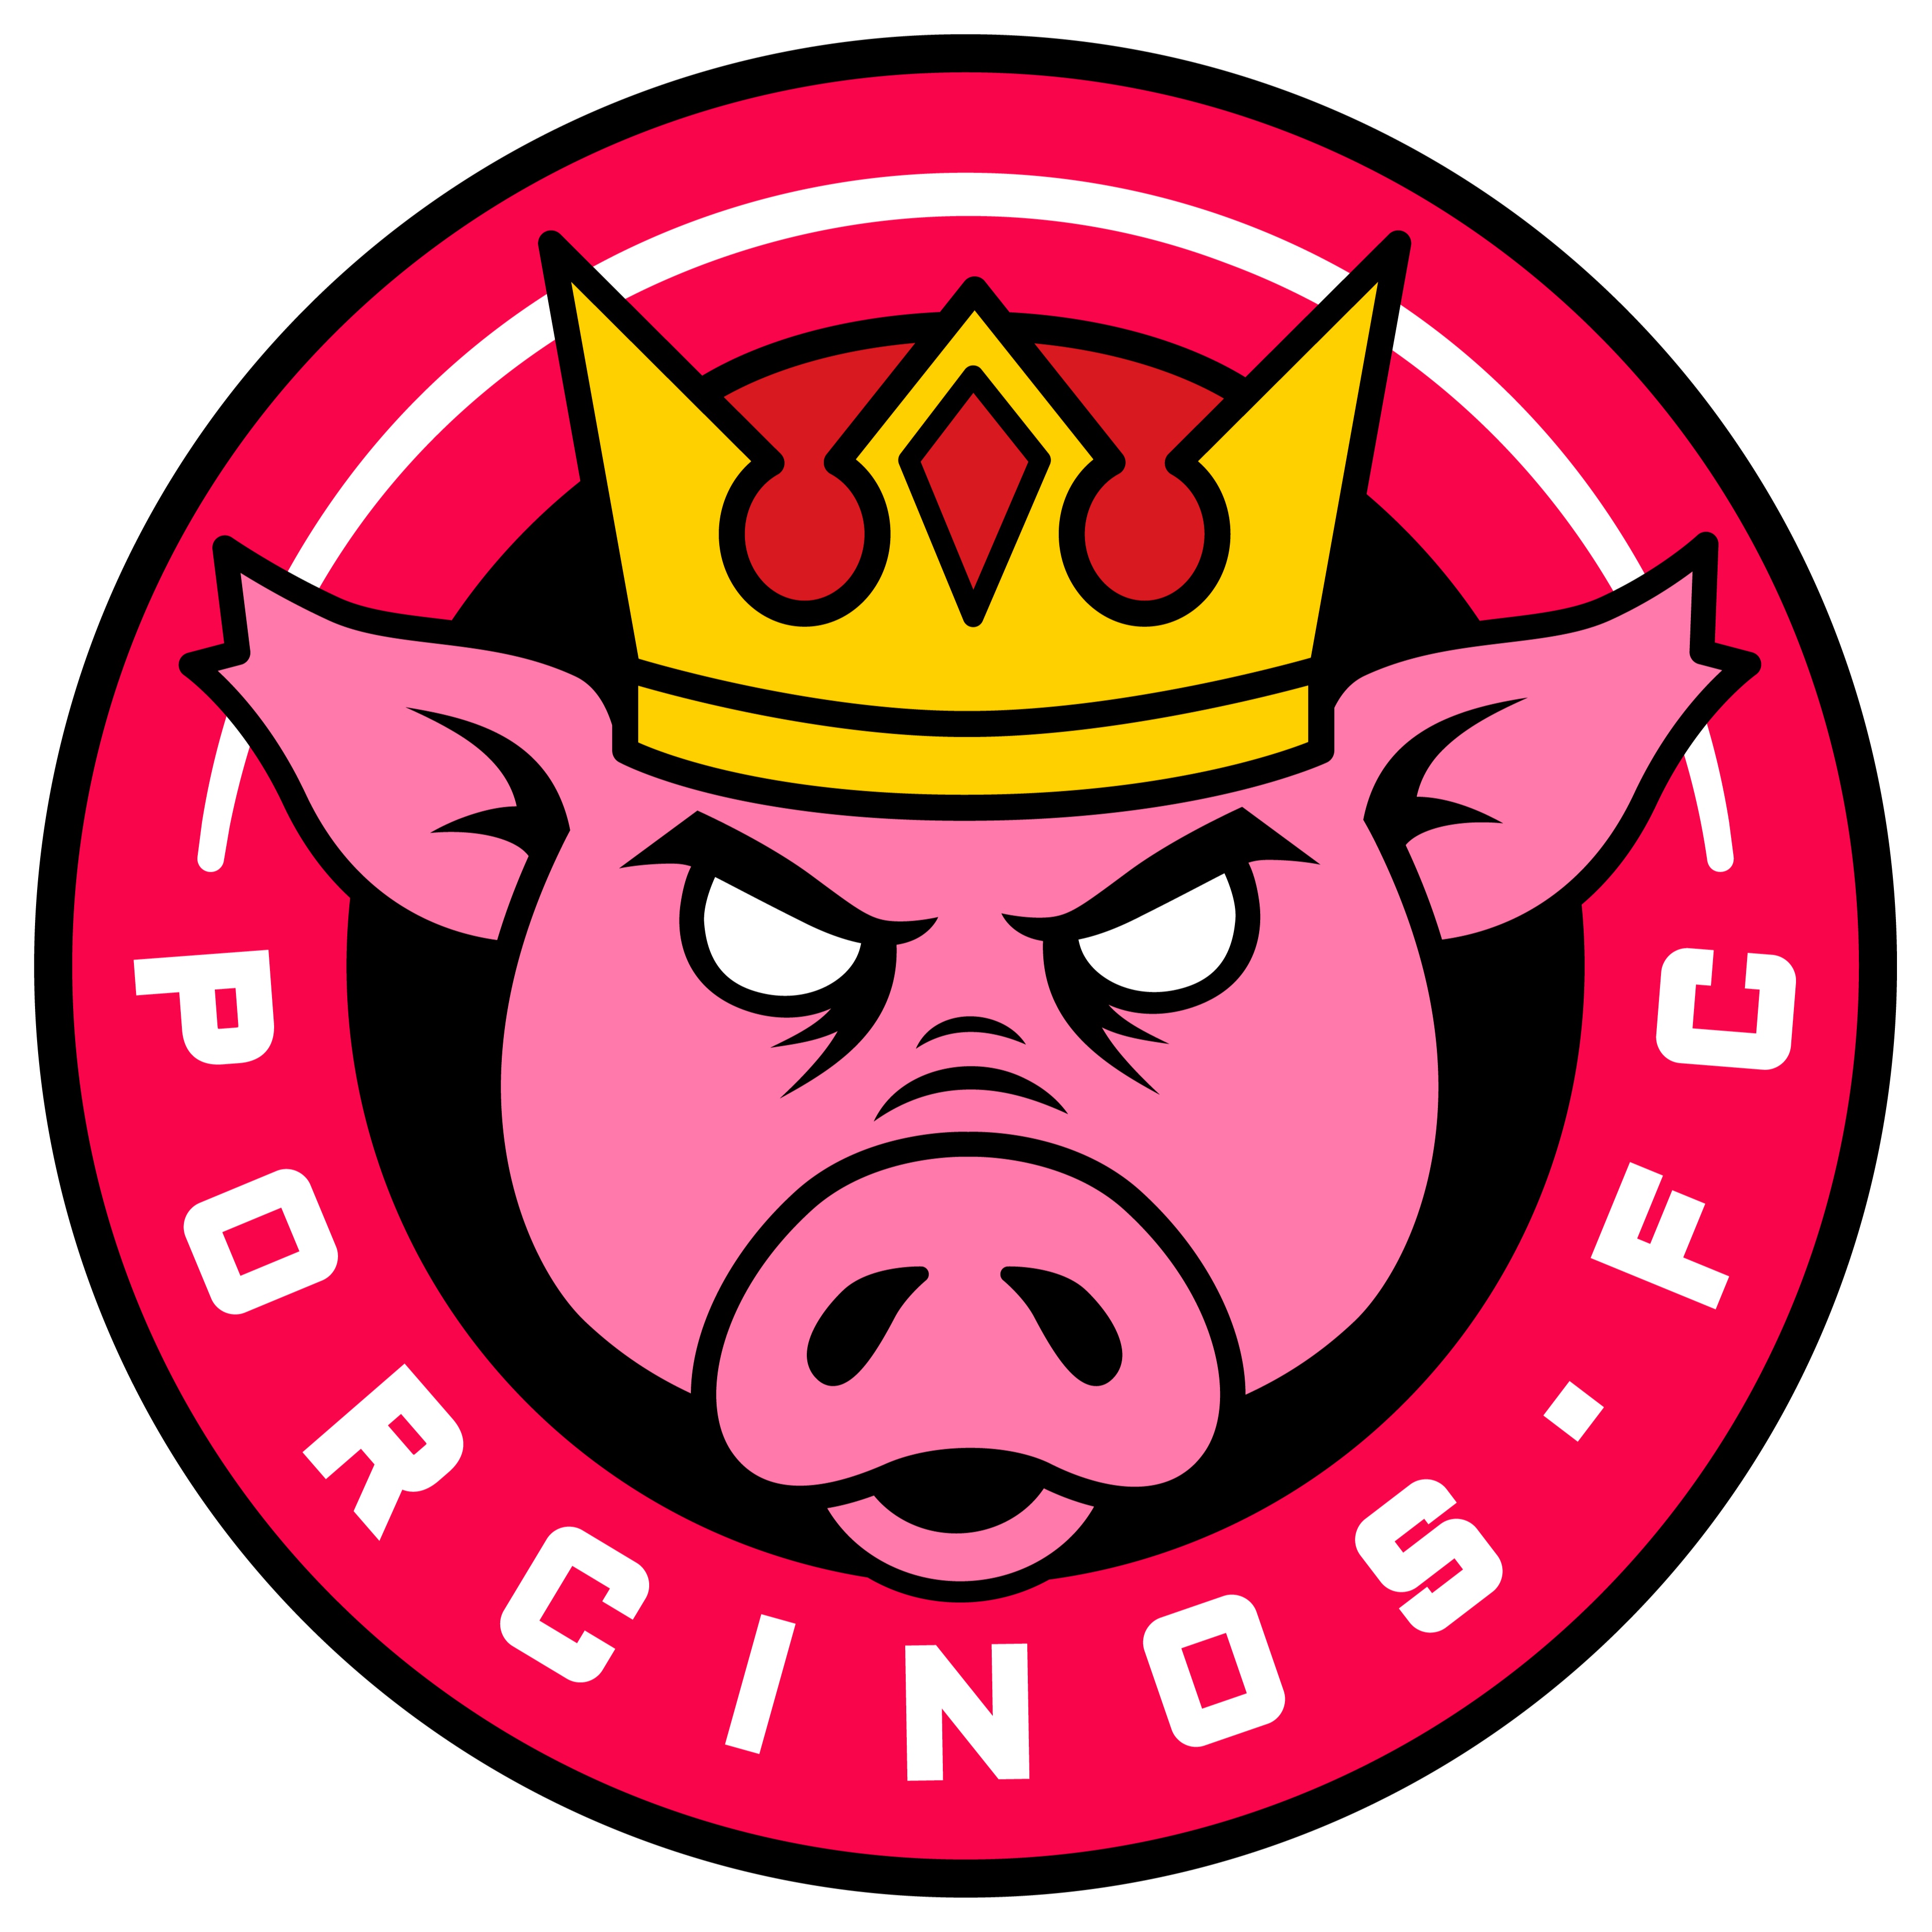 Escudo del Porcinos FC